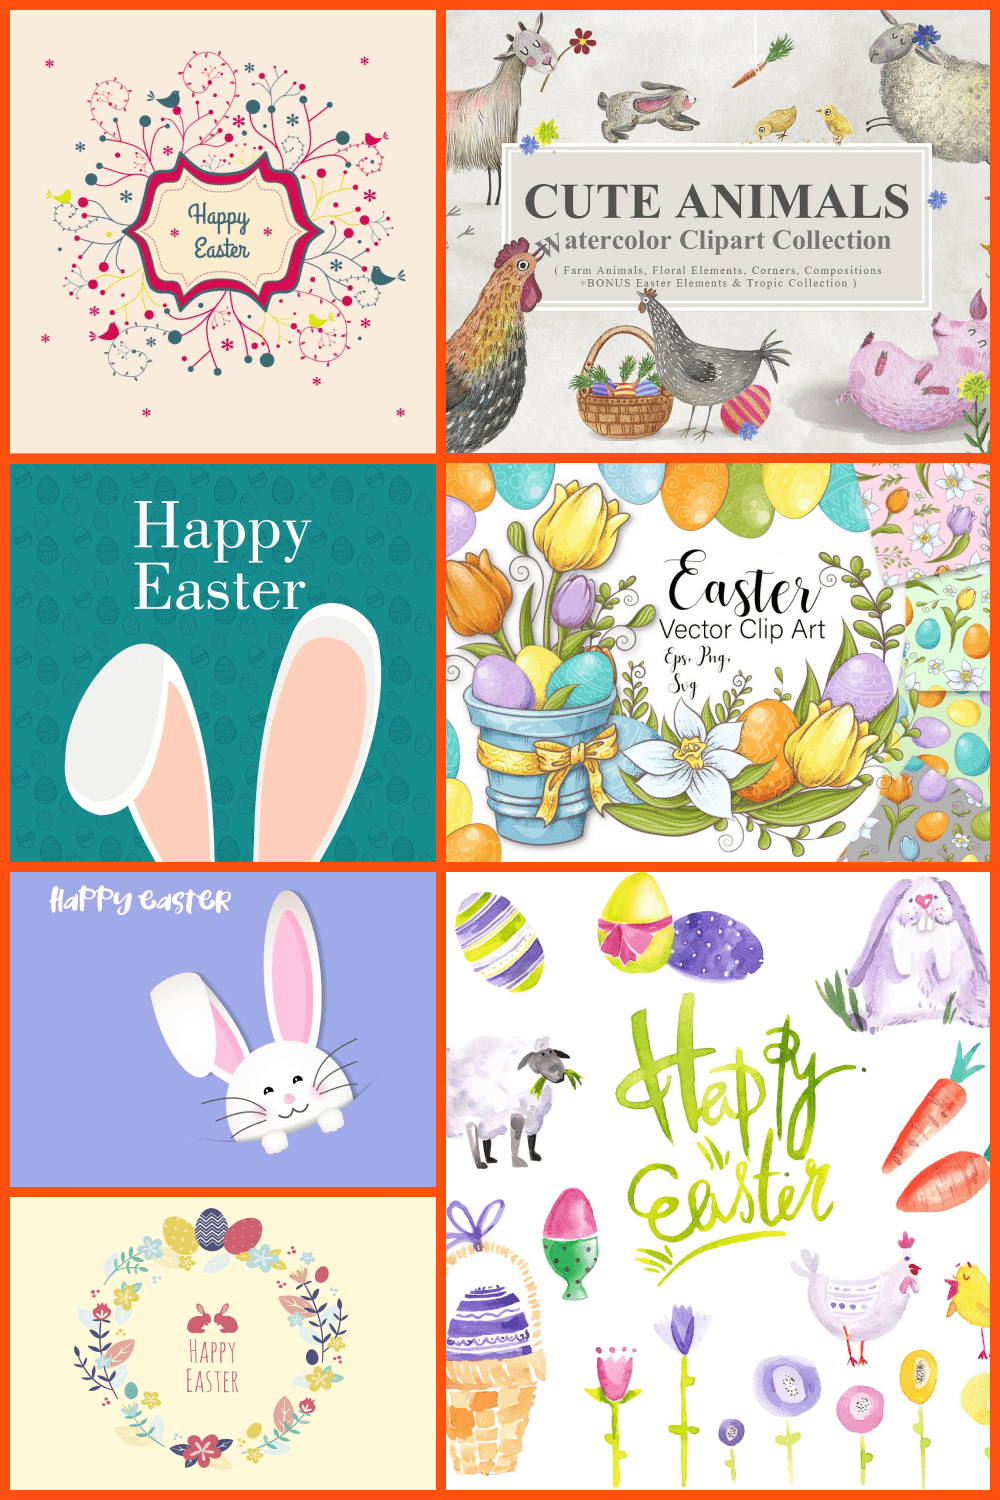 Easter Graphics - Pinterest.